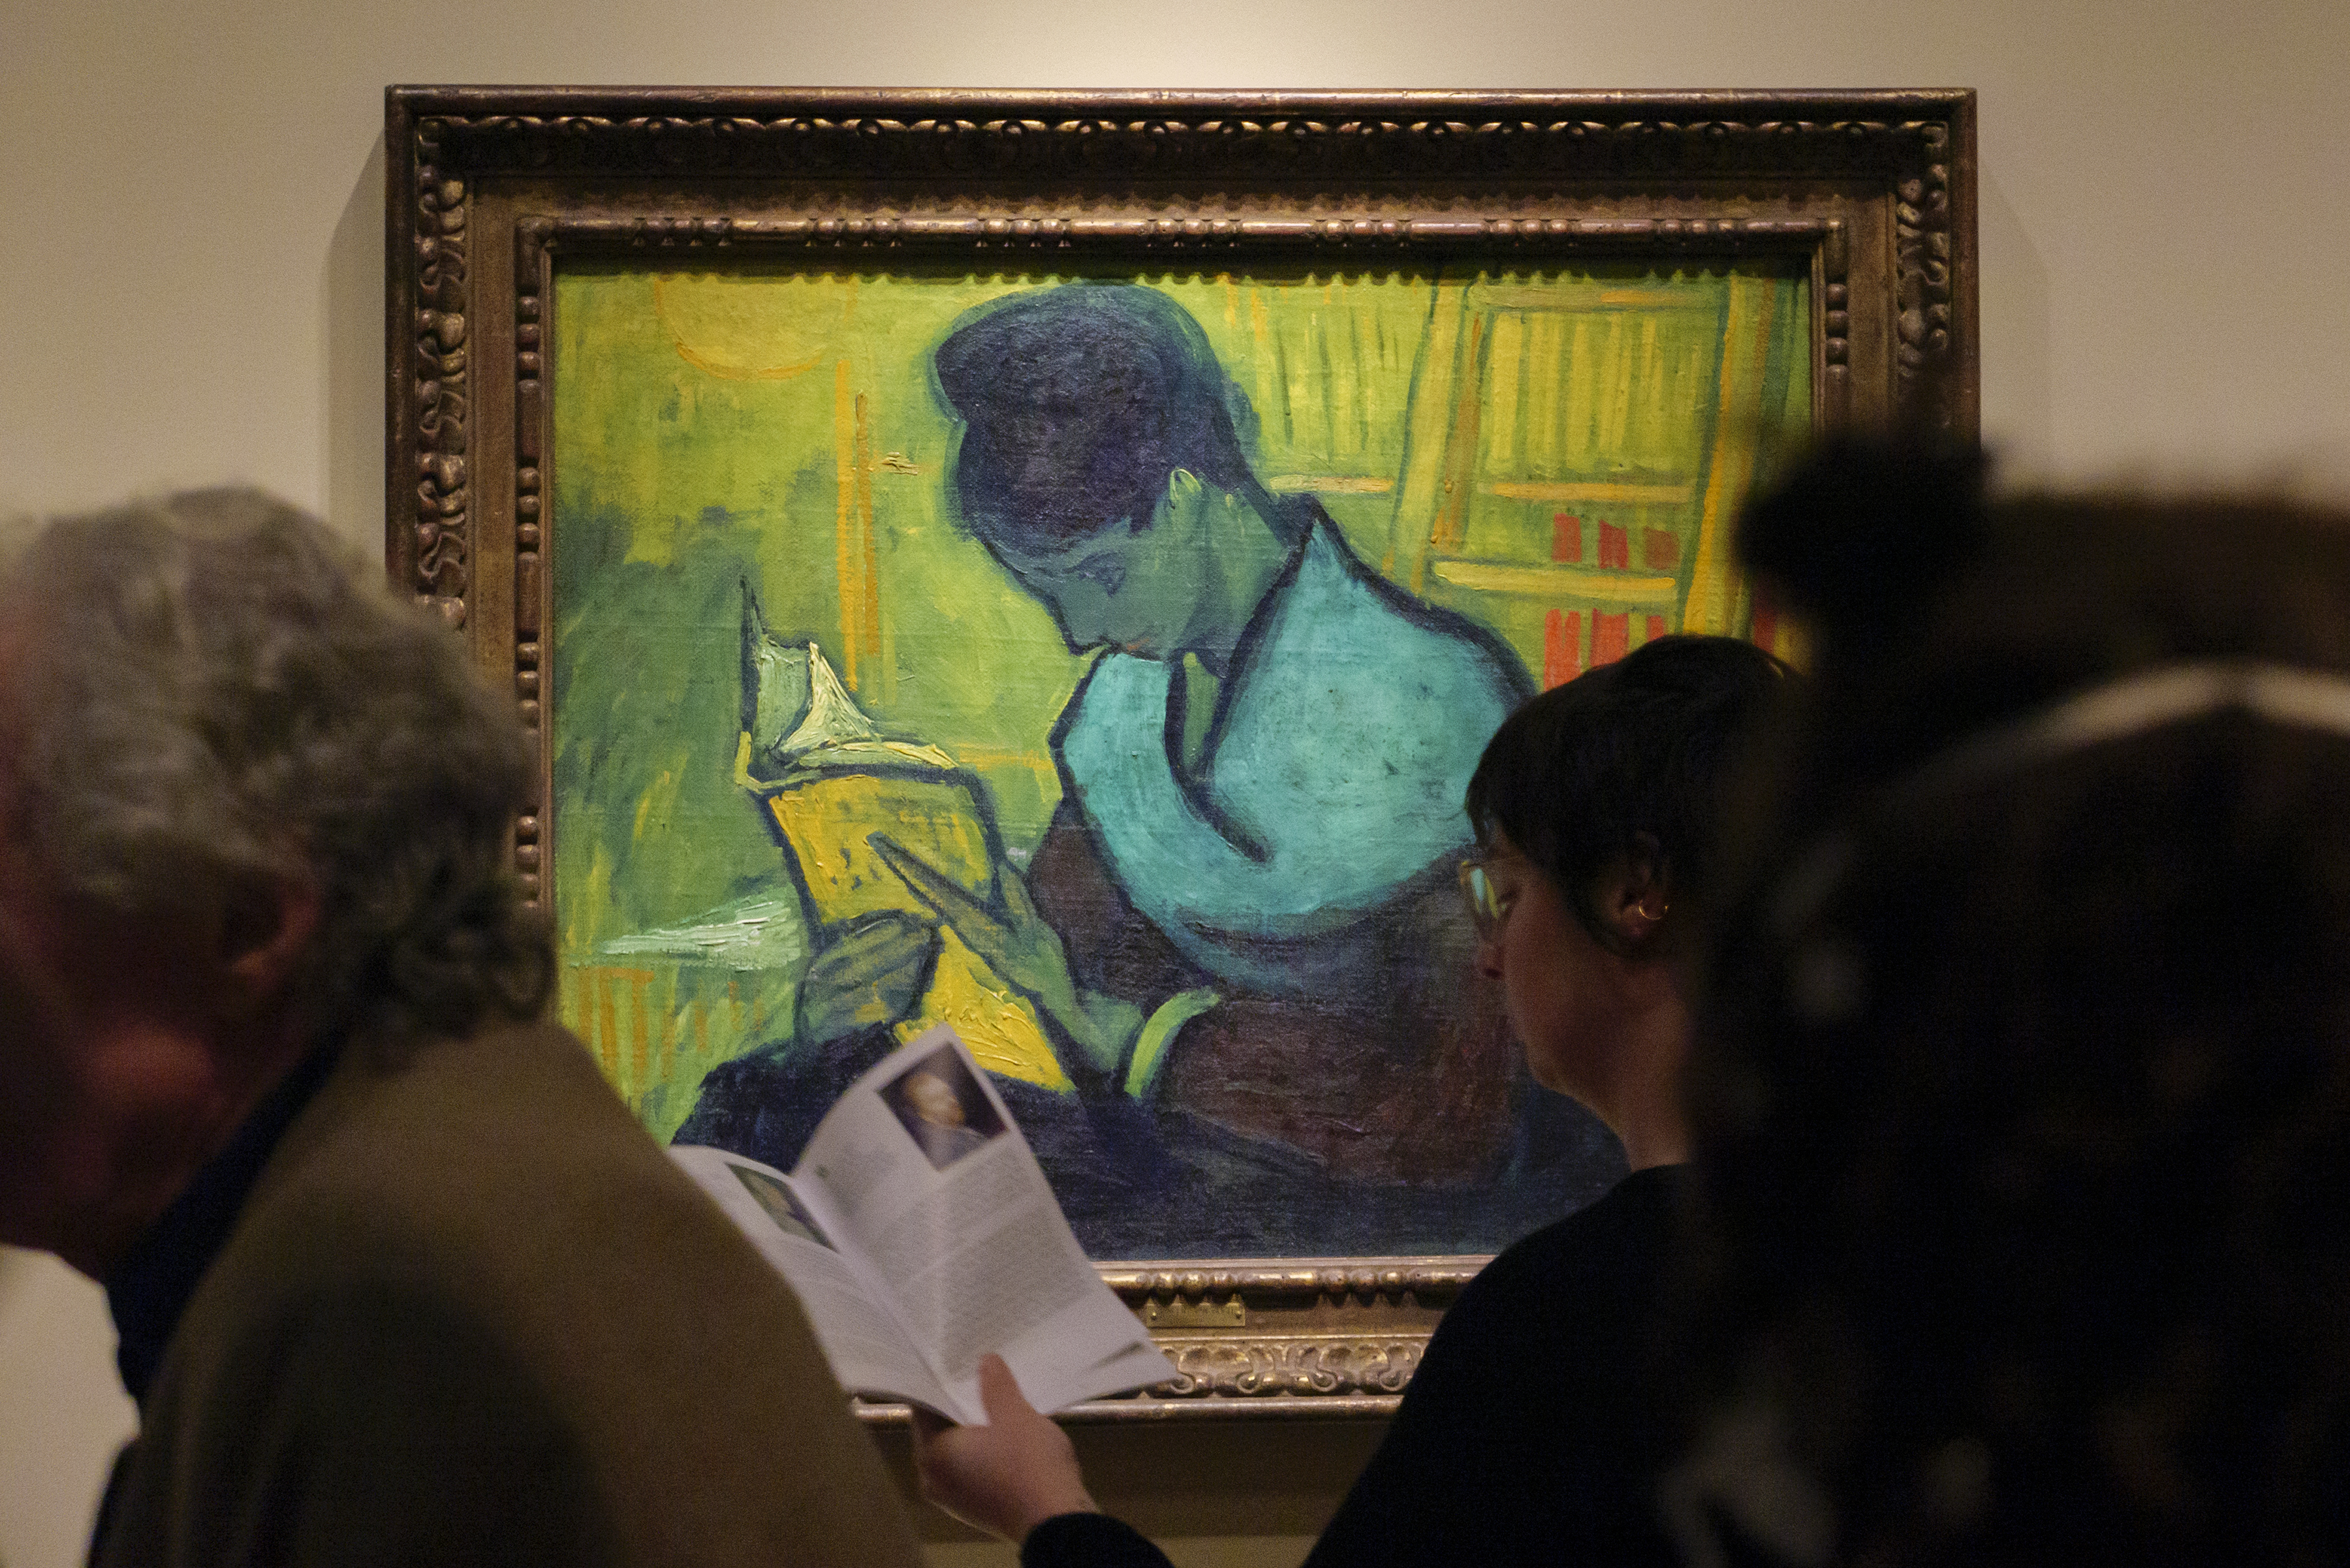 Visitantes pasan frente a la pintura de Van Gogh "Une liseuse de romans", conocida como "La lectora de novelas" o "La dama lectora", durante la exposición "Van Gogh in America" en el Instituto de Artes de Detroit (Foto: Andy Morrison/Detroit News via AP)